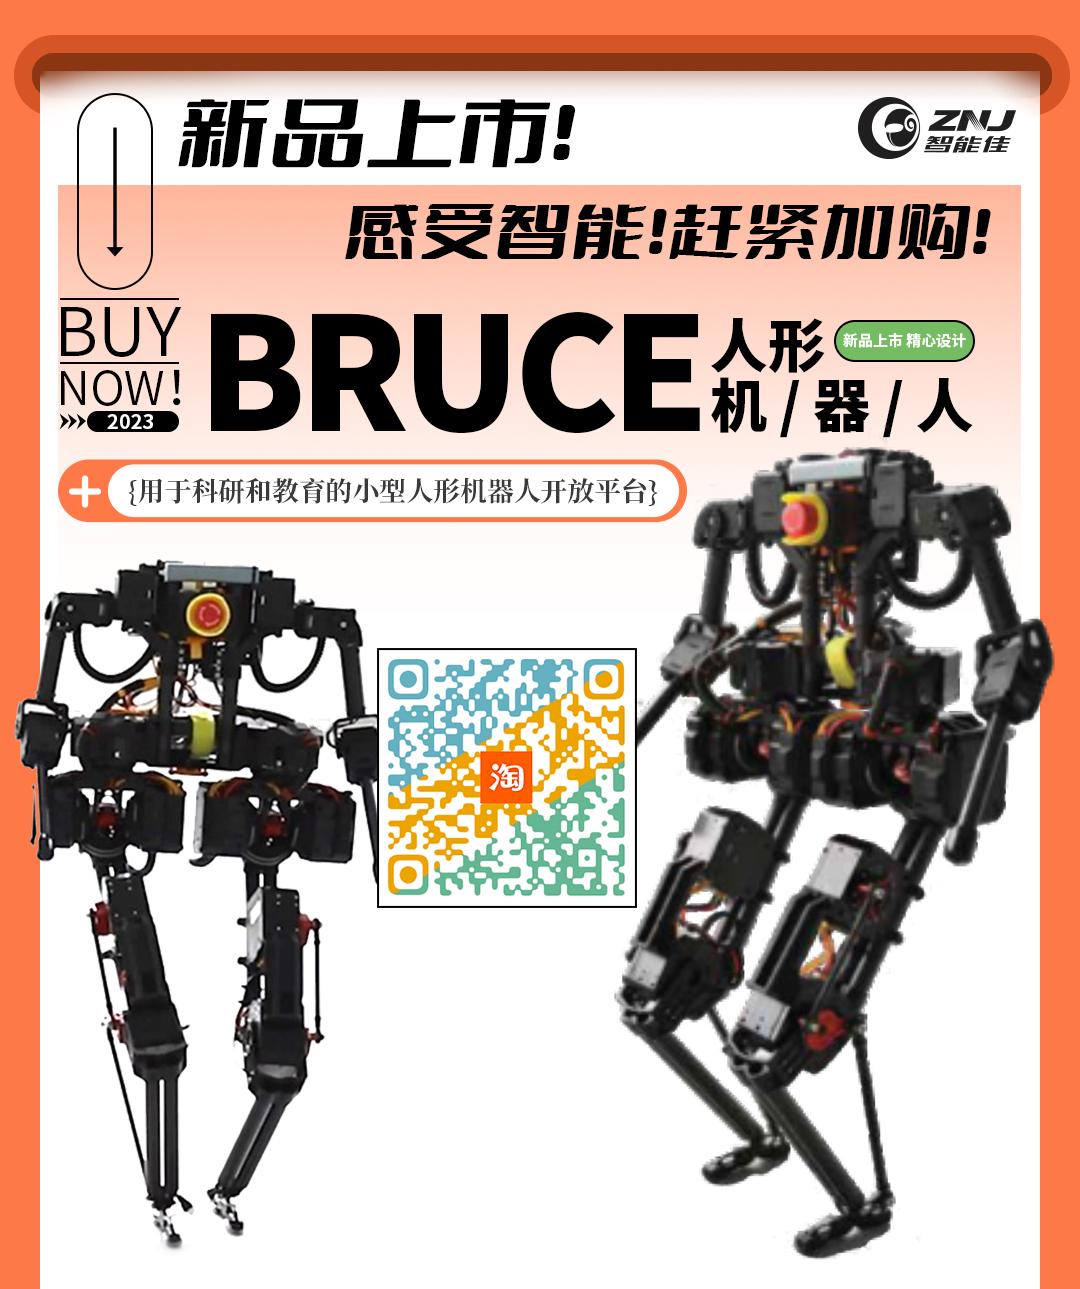 <b>BRUCE—用于科研和教育的小型人形机器人开放平台</b>